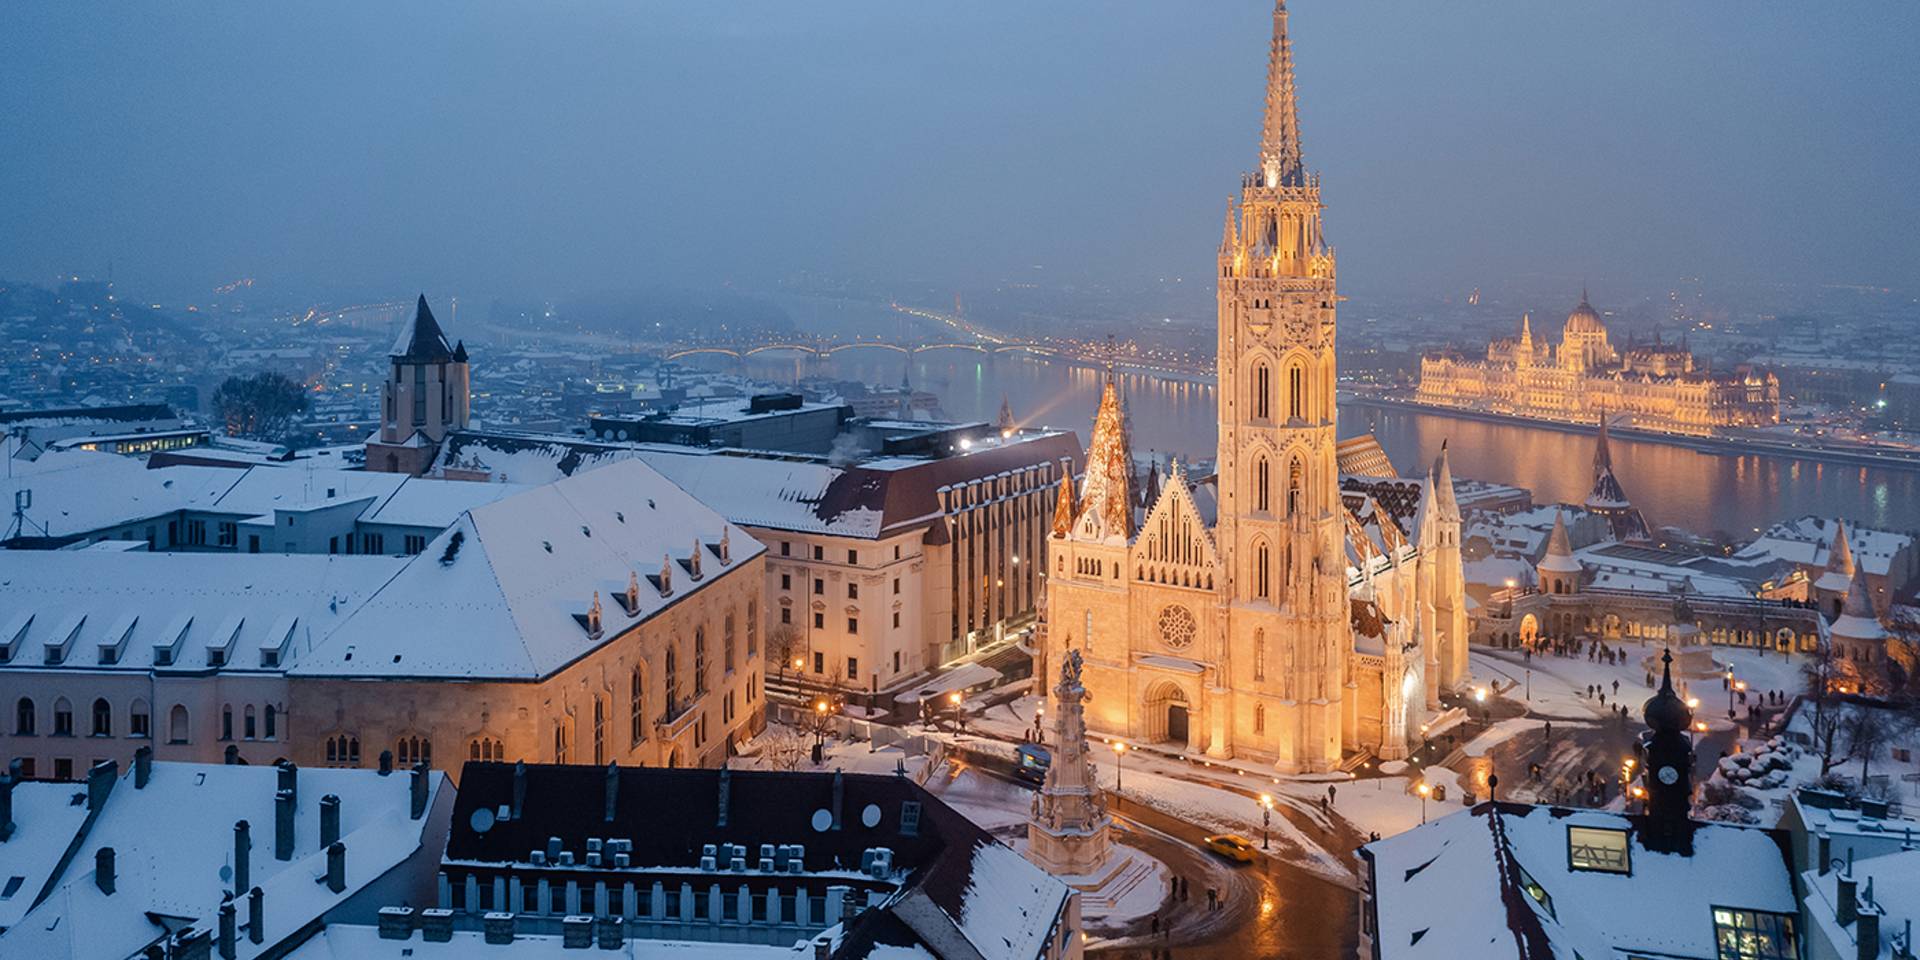 Budapest 150 – Bódis Krisztián kedvenc drónfotóival köszöntötte a fővárost